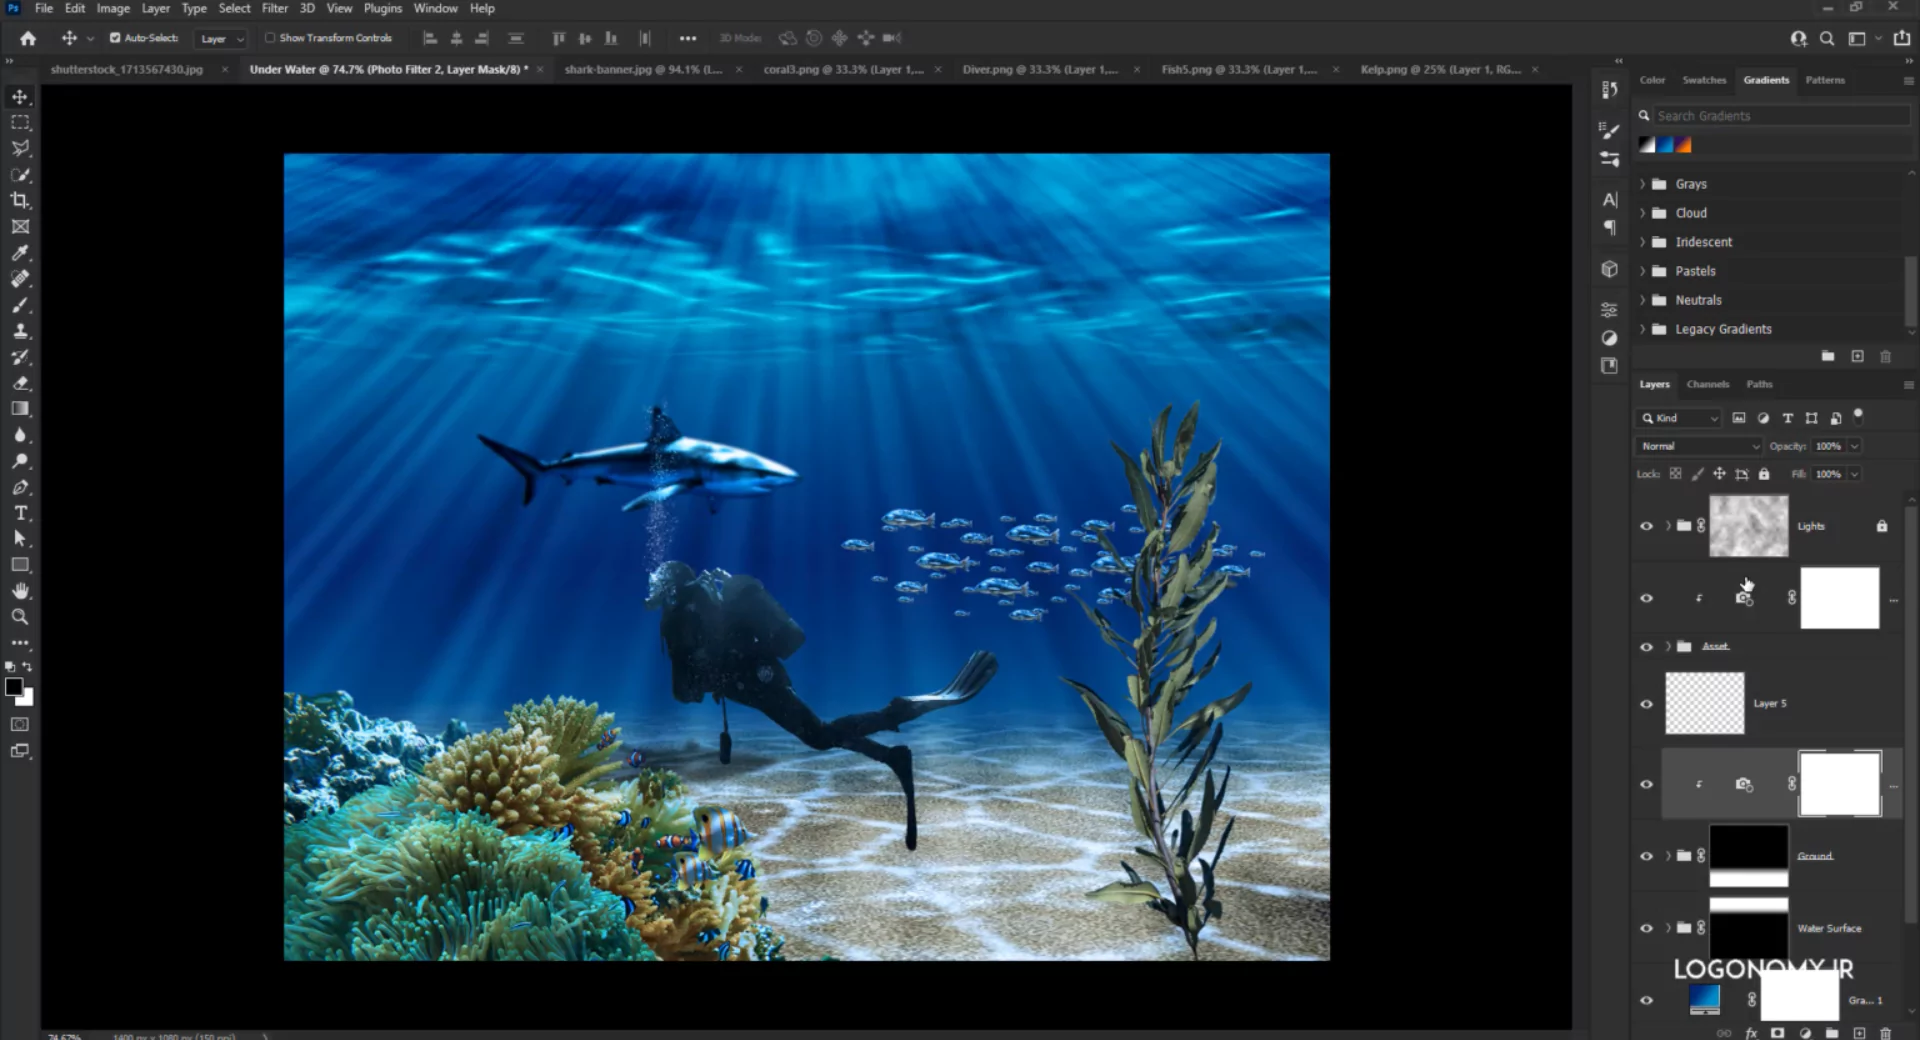 آموزش طراحی والپیپر زیر آب با نرم افزار فتوشاپ (Photoshop)